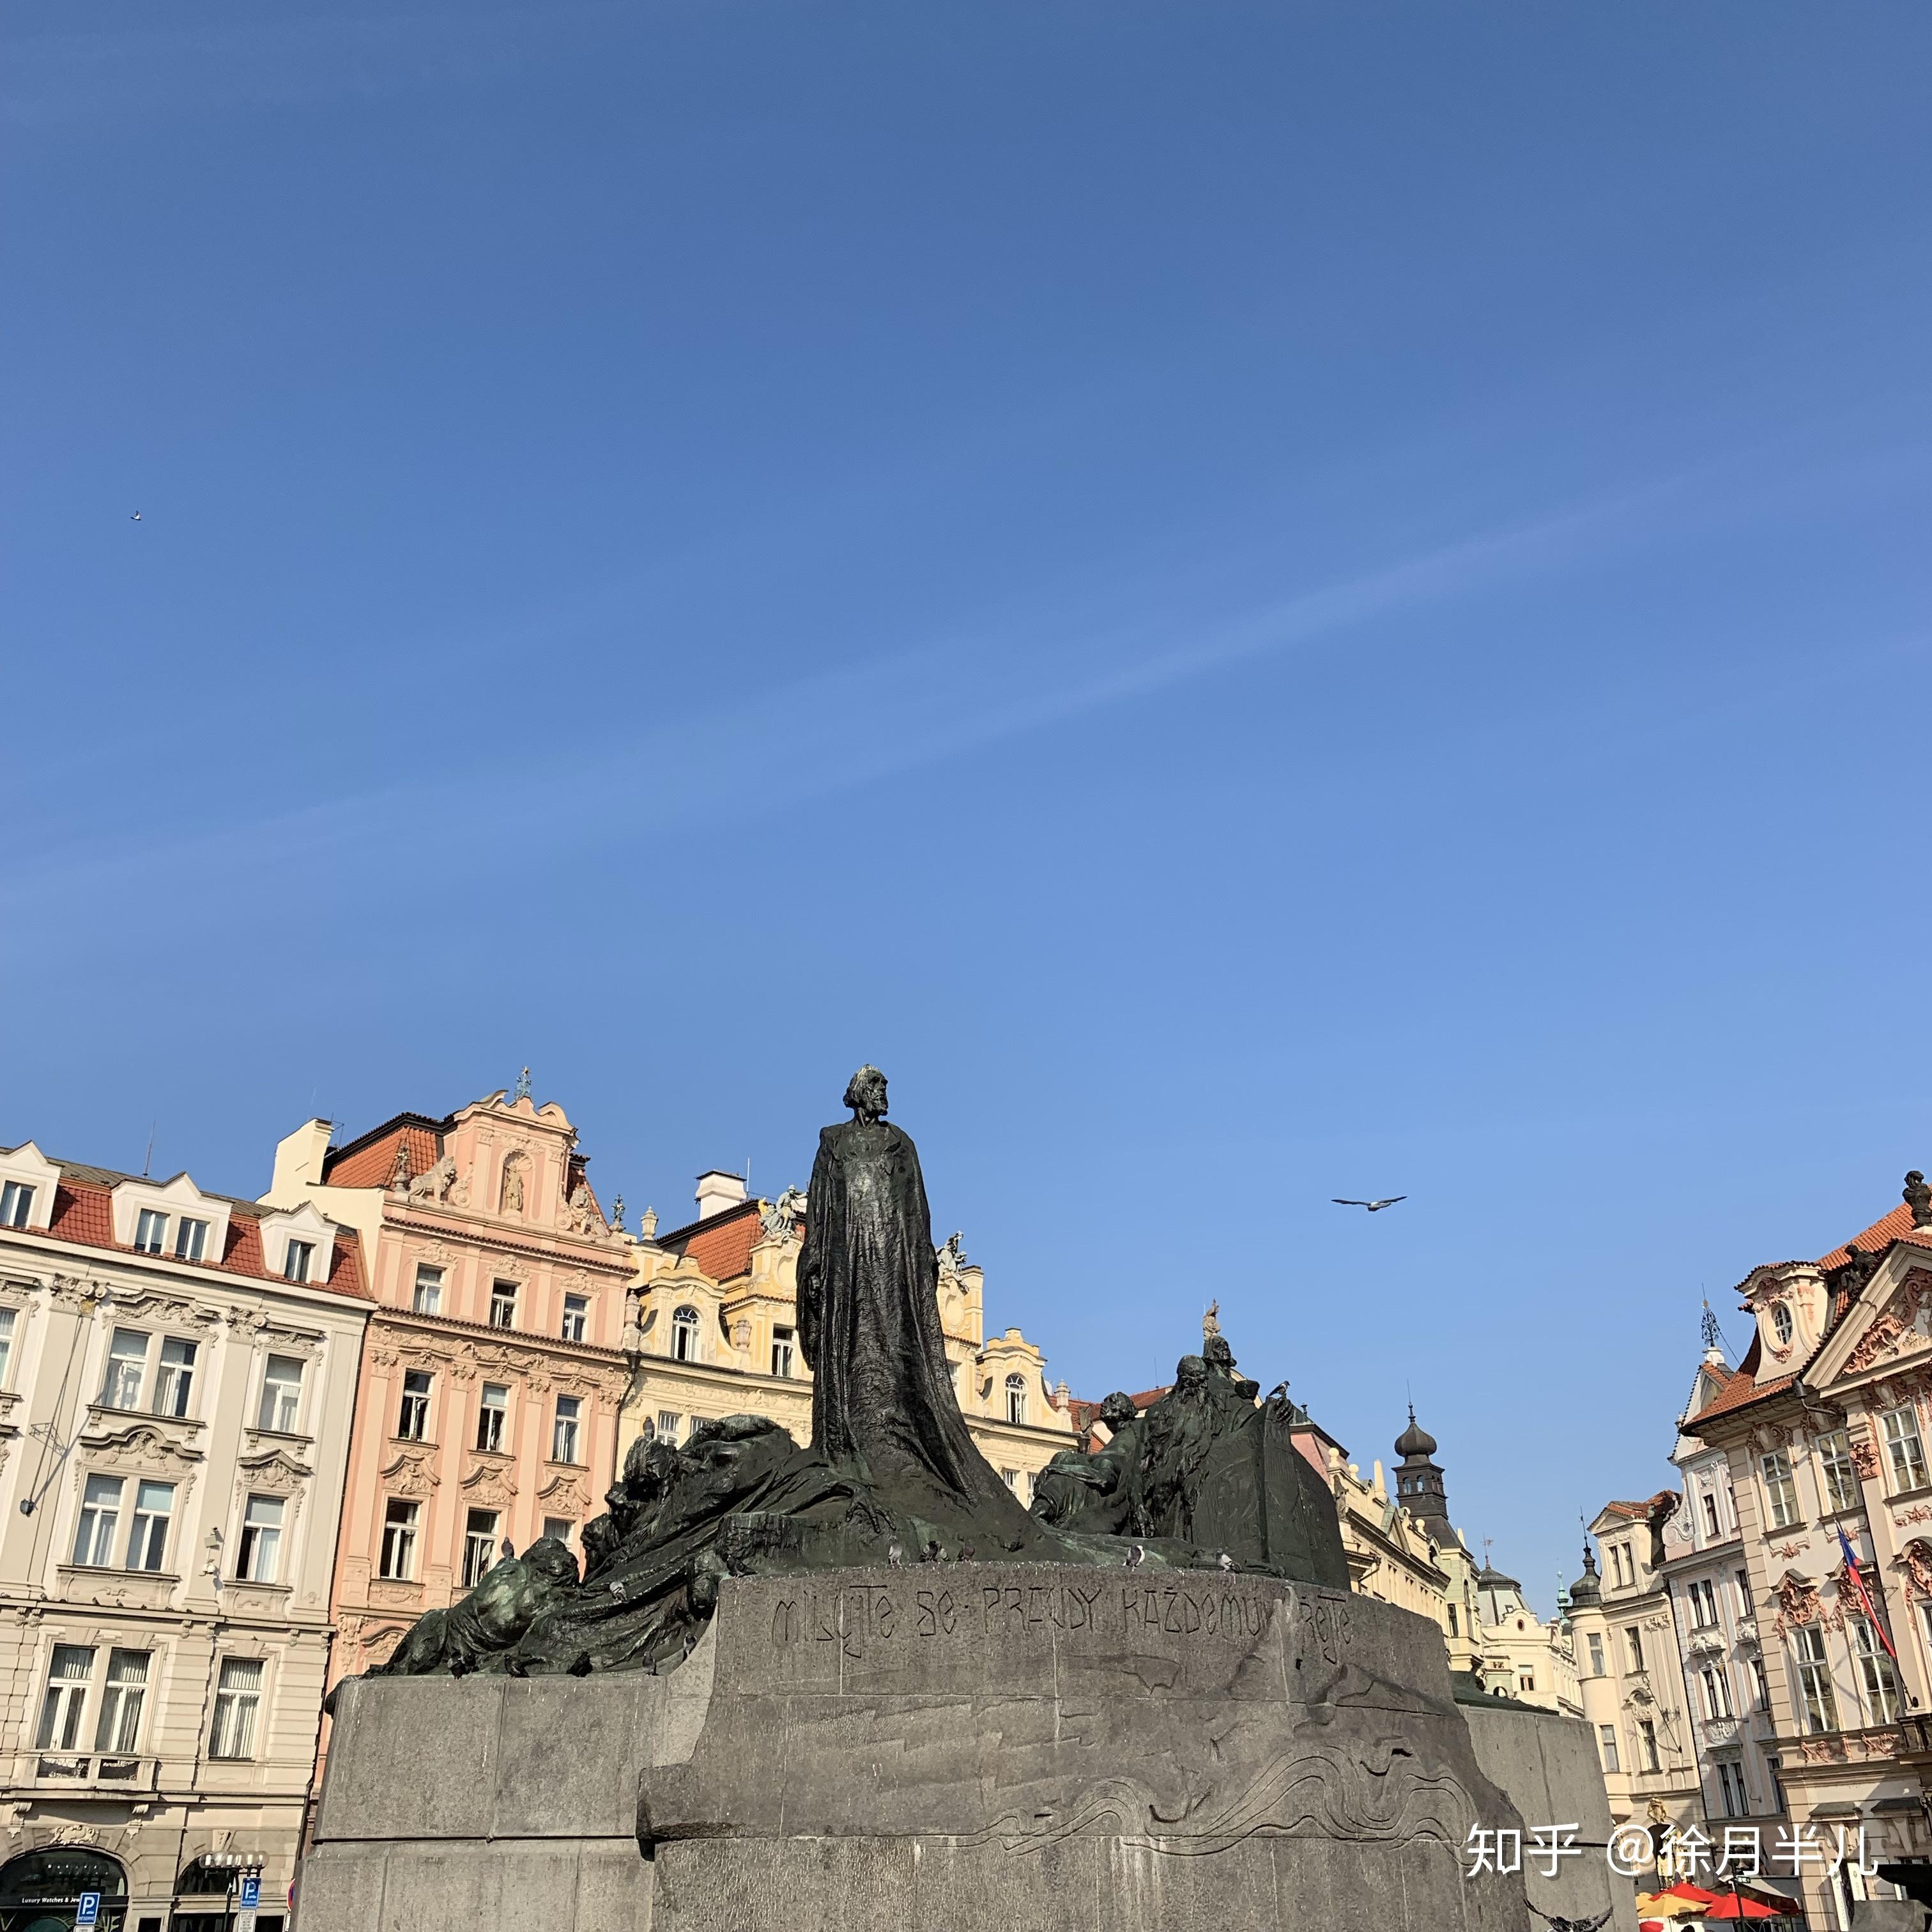 去布拉格旅行时哪里适合拍照?